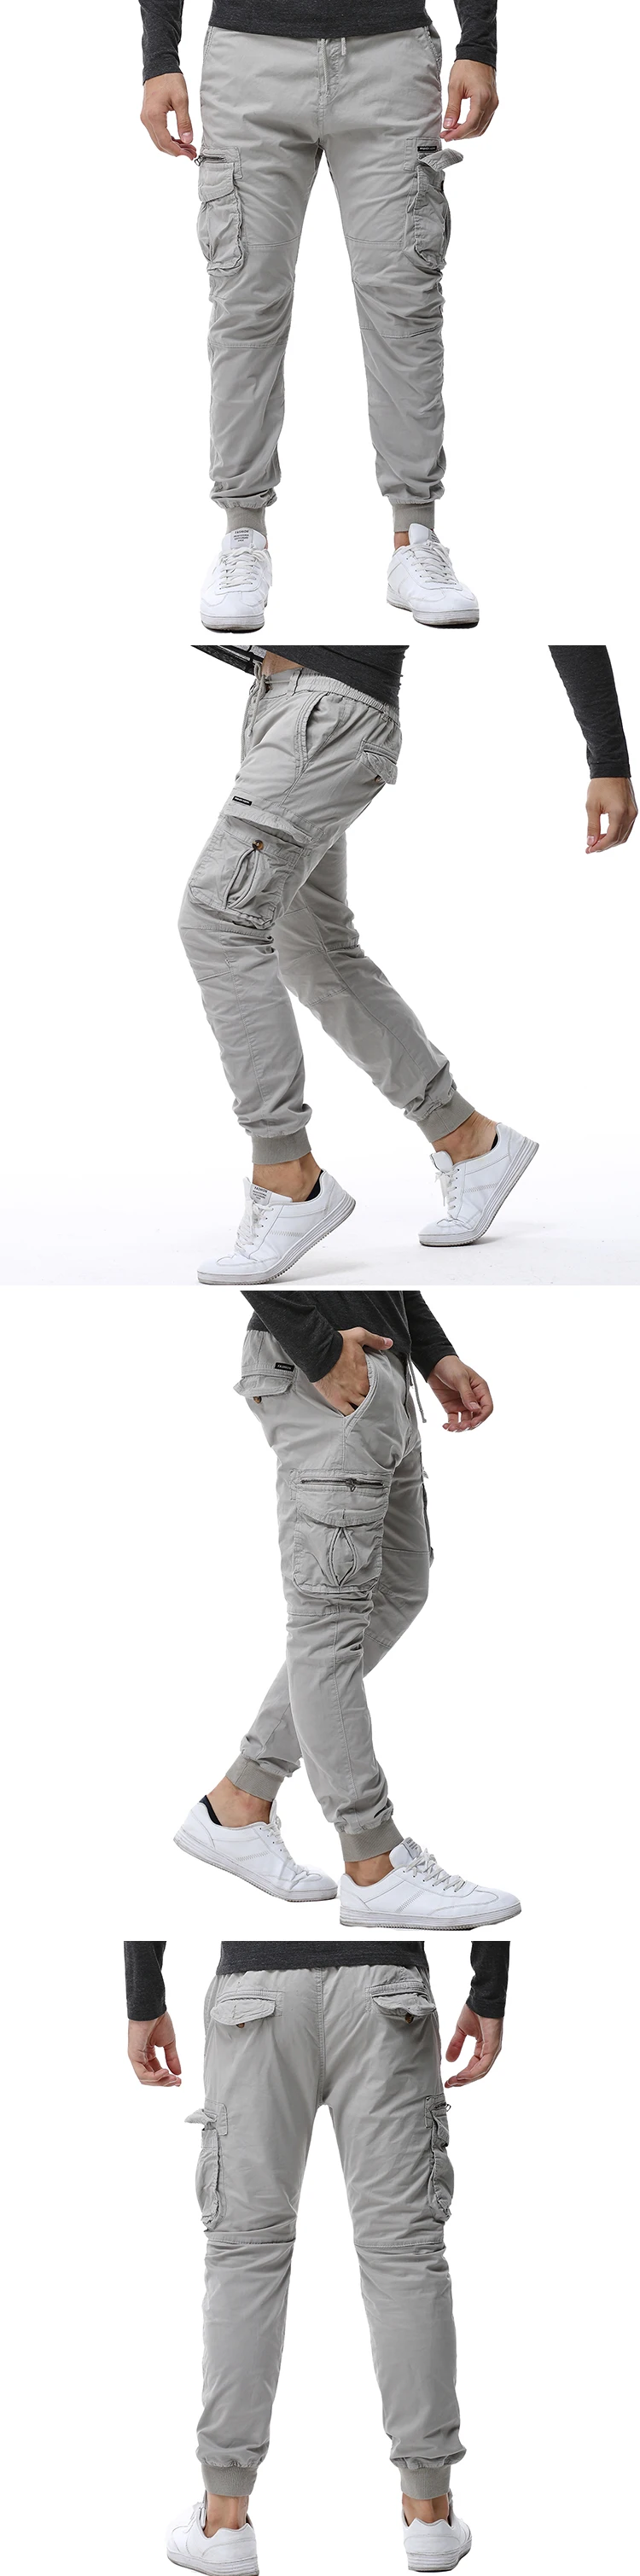 2019 бренд Мужские брюки карго Для мужчин s Повседневное многокарманный Военный Мужские брюки, тактические Пиджаки Армия прямые брюки